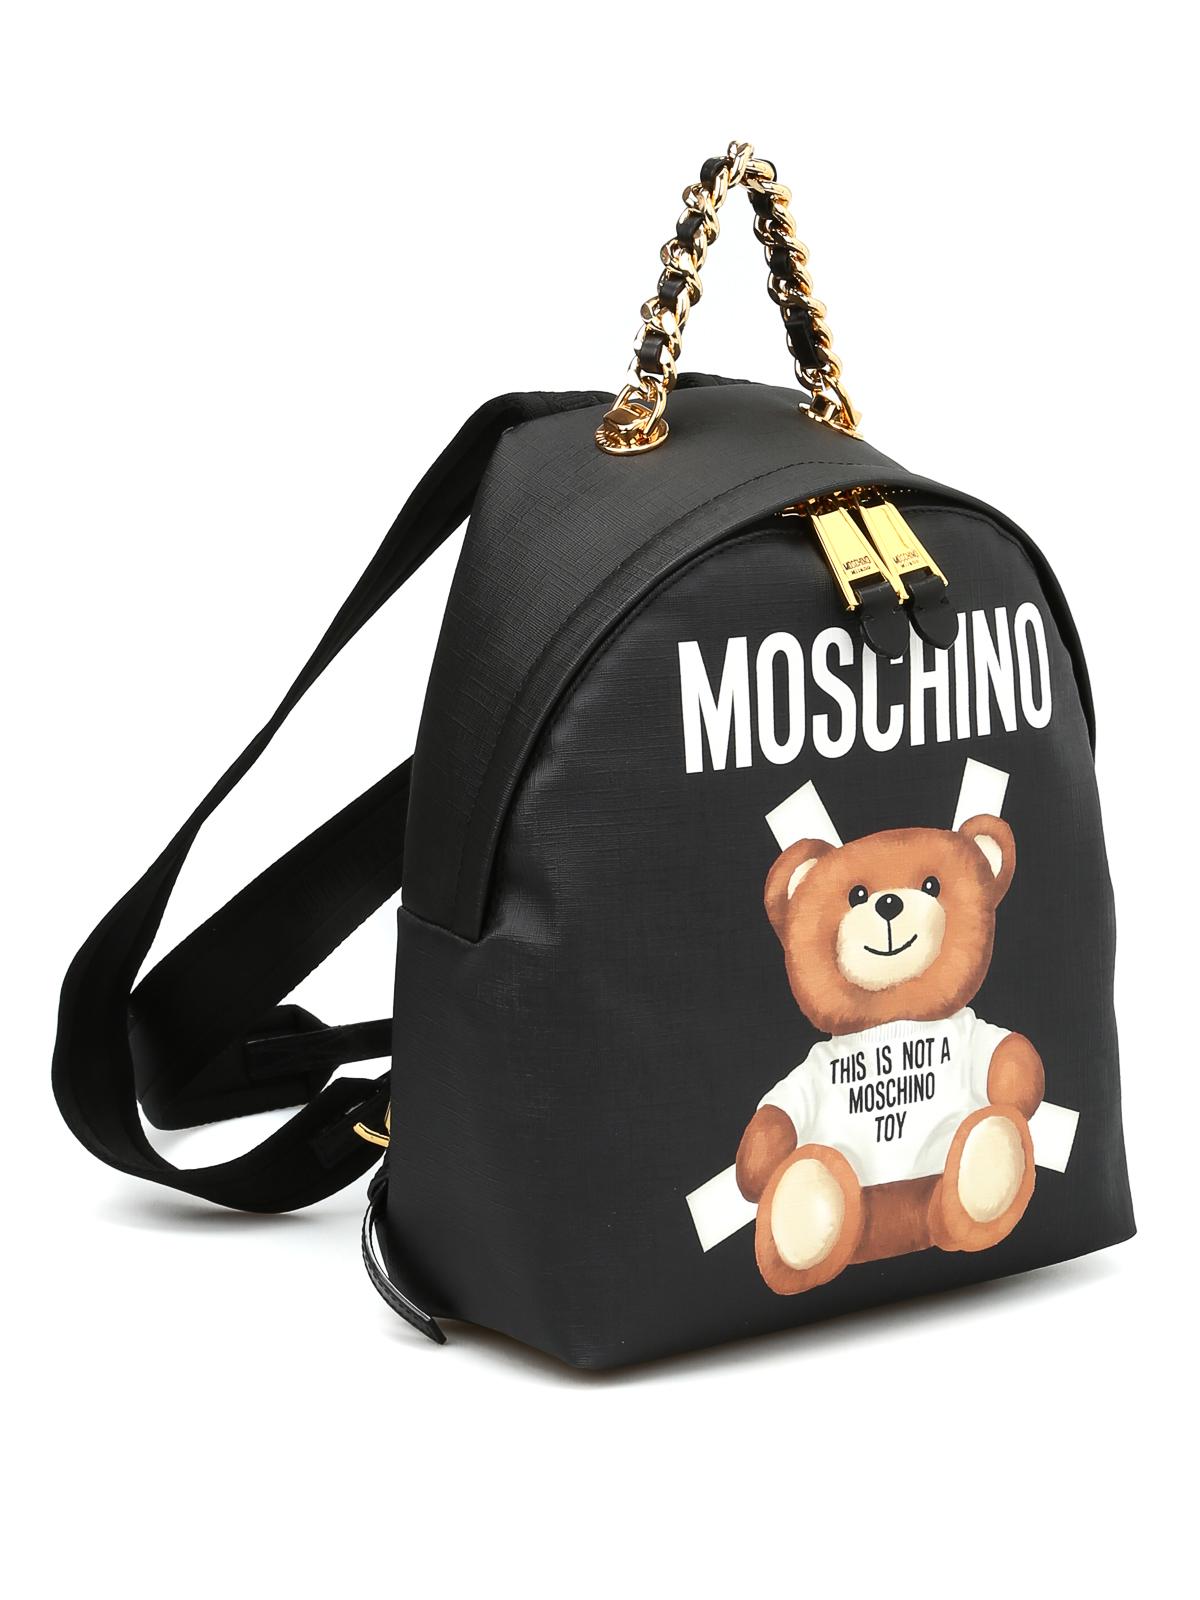 Москино мишка оригинал. Moschino Toy 2. Рюкзак Москино. Рюкзак Moschino Дисней. Москино рюкзак медведь.